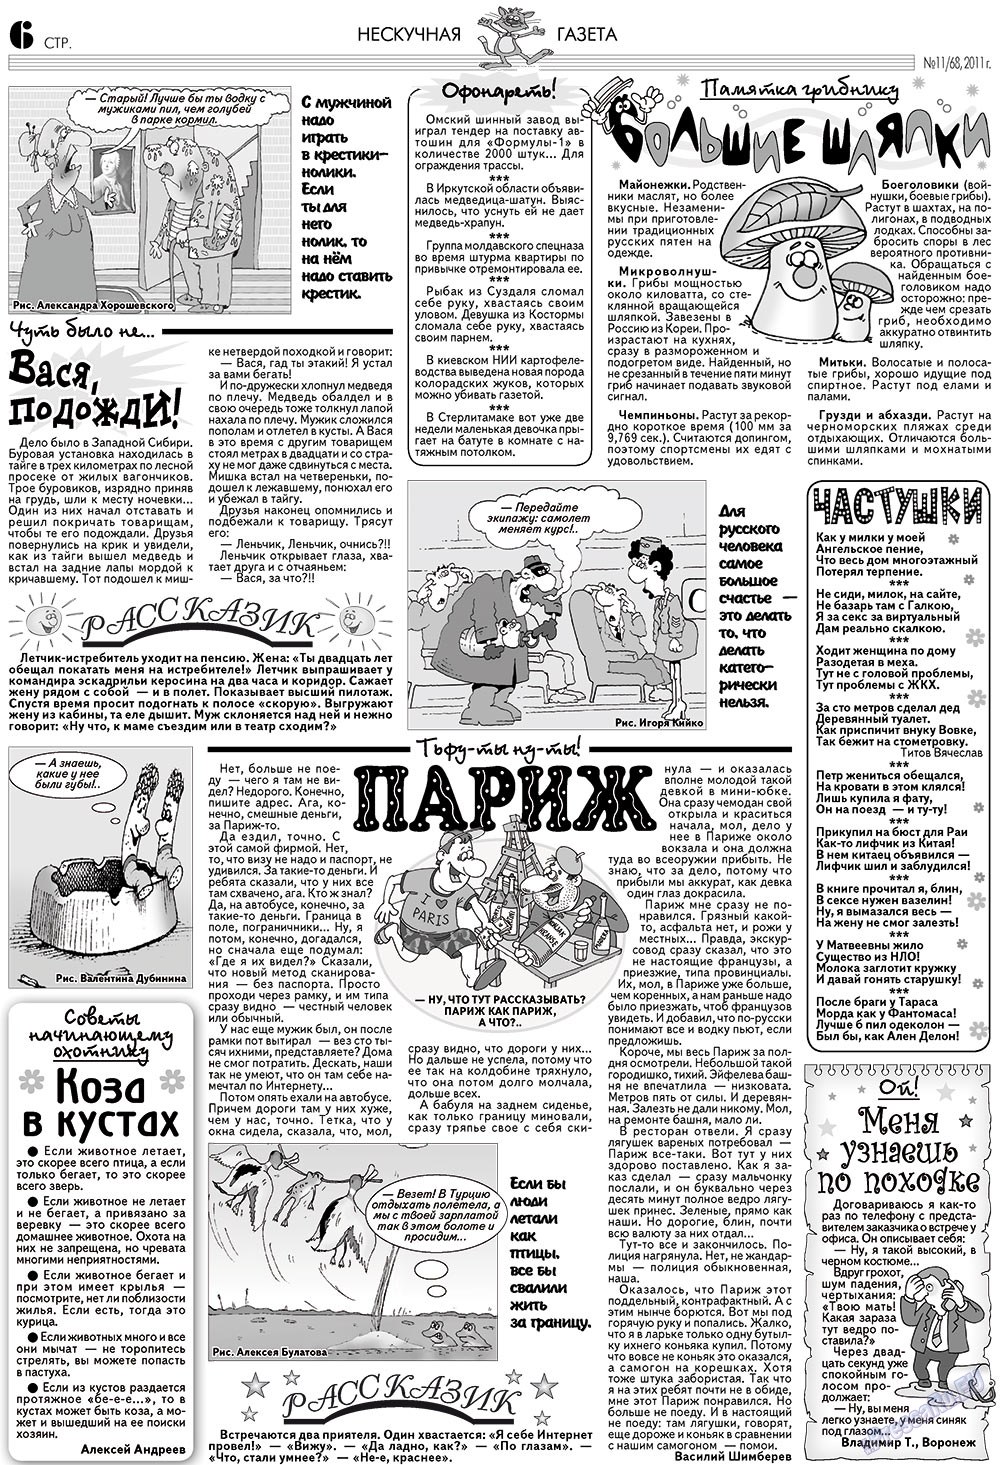 Нескучная газета (журнал). 2011 год, номер 11, стр. 6